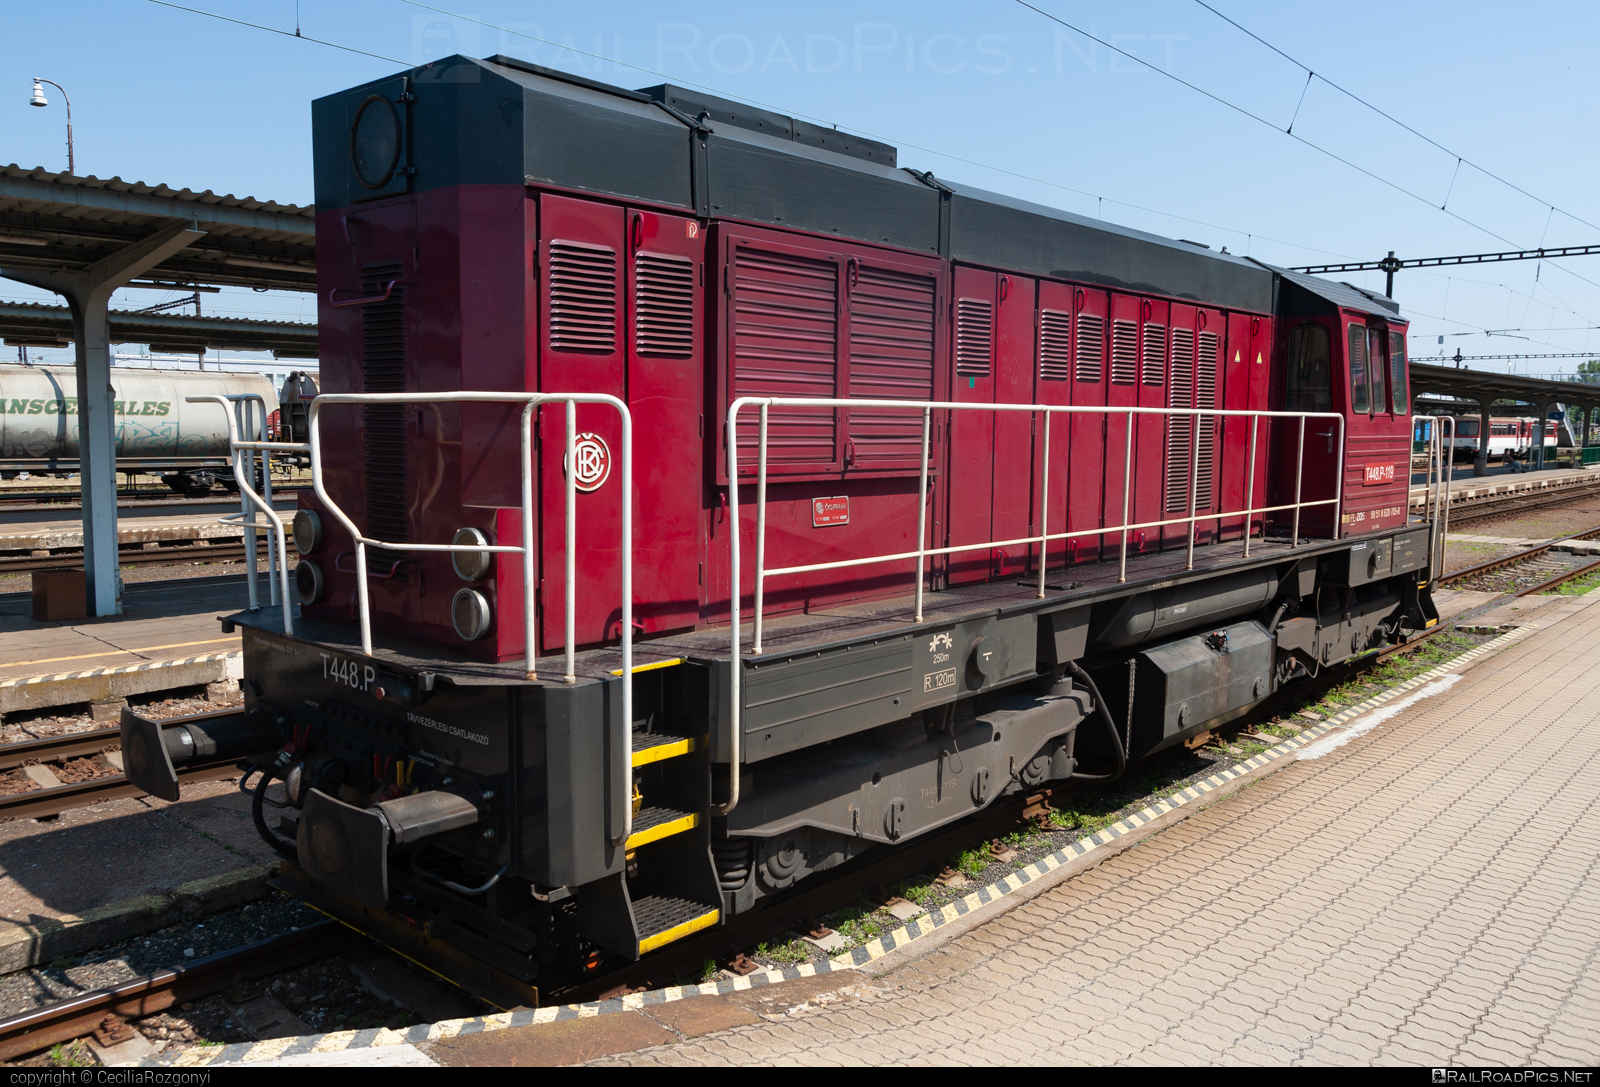 ČKD T 448.0 (740) - T448.P119 operated by Komplex Rail Vasúti Szolgáltató Kft. #KomplexRailKft #KomplexRailVasutiSzolgaltatoKft #ckd #ckd4480 #ckd740 #ckdt4480 #zoszvolen